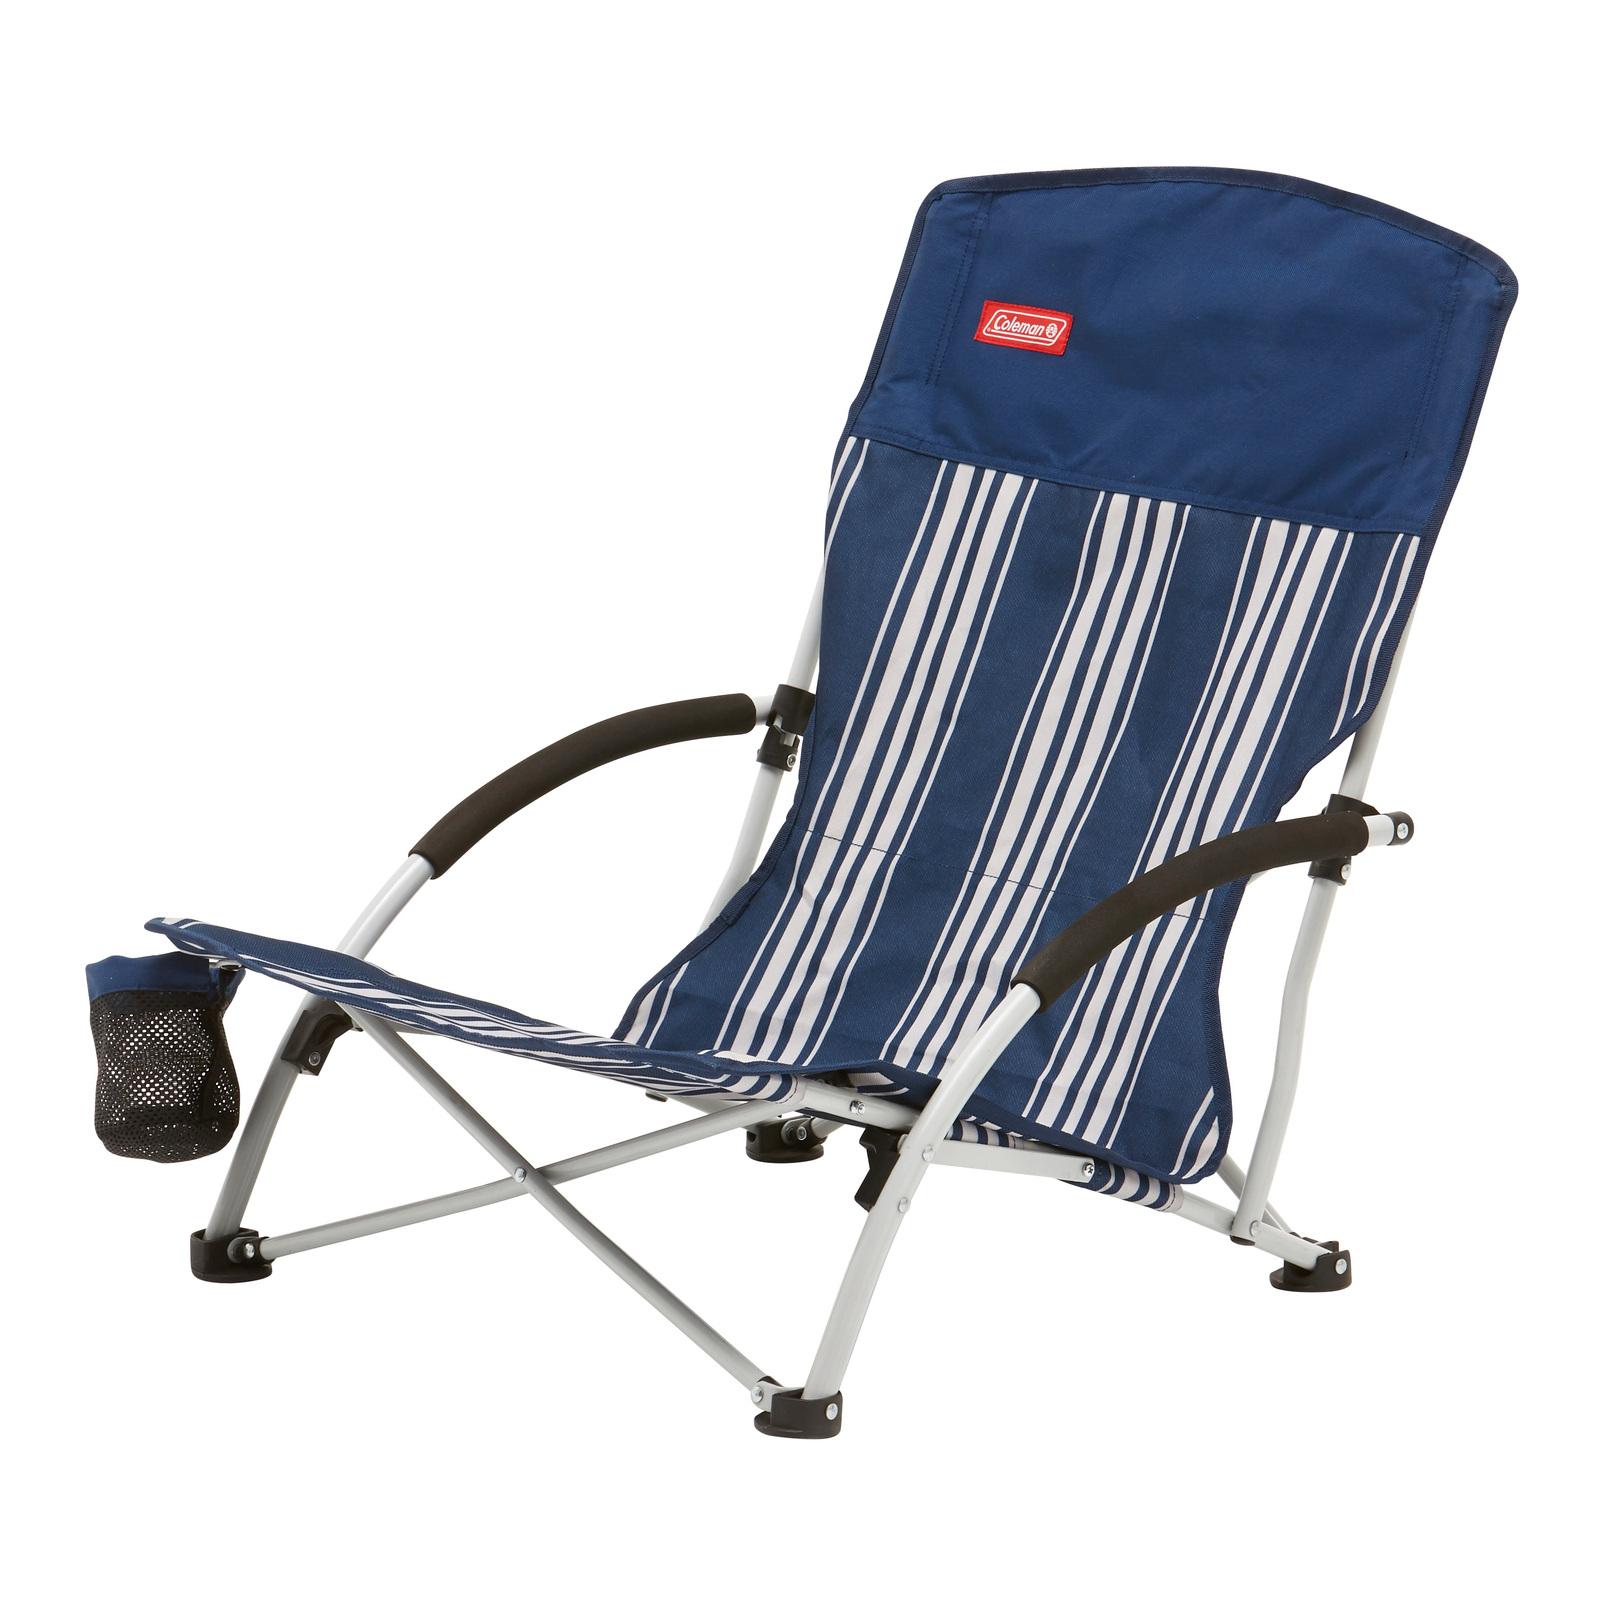 Modern White Beach Chair for Small Space